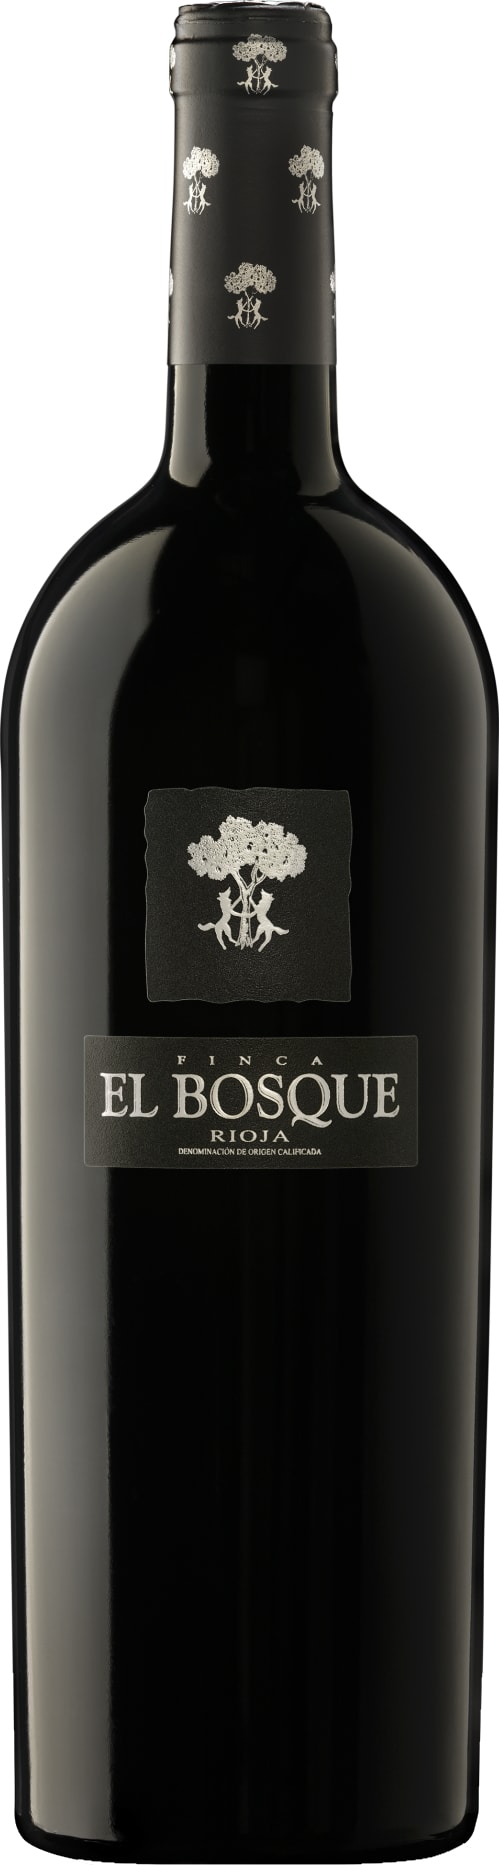 Vinedos Sierra Cantabria Rioja Finca El Bosque 2019 75cl - Buy Vinedos Sierra Cantabria Wines from GREAT WINES DIRECT wine shop